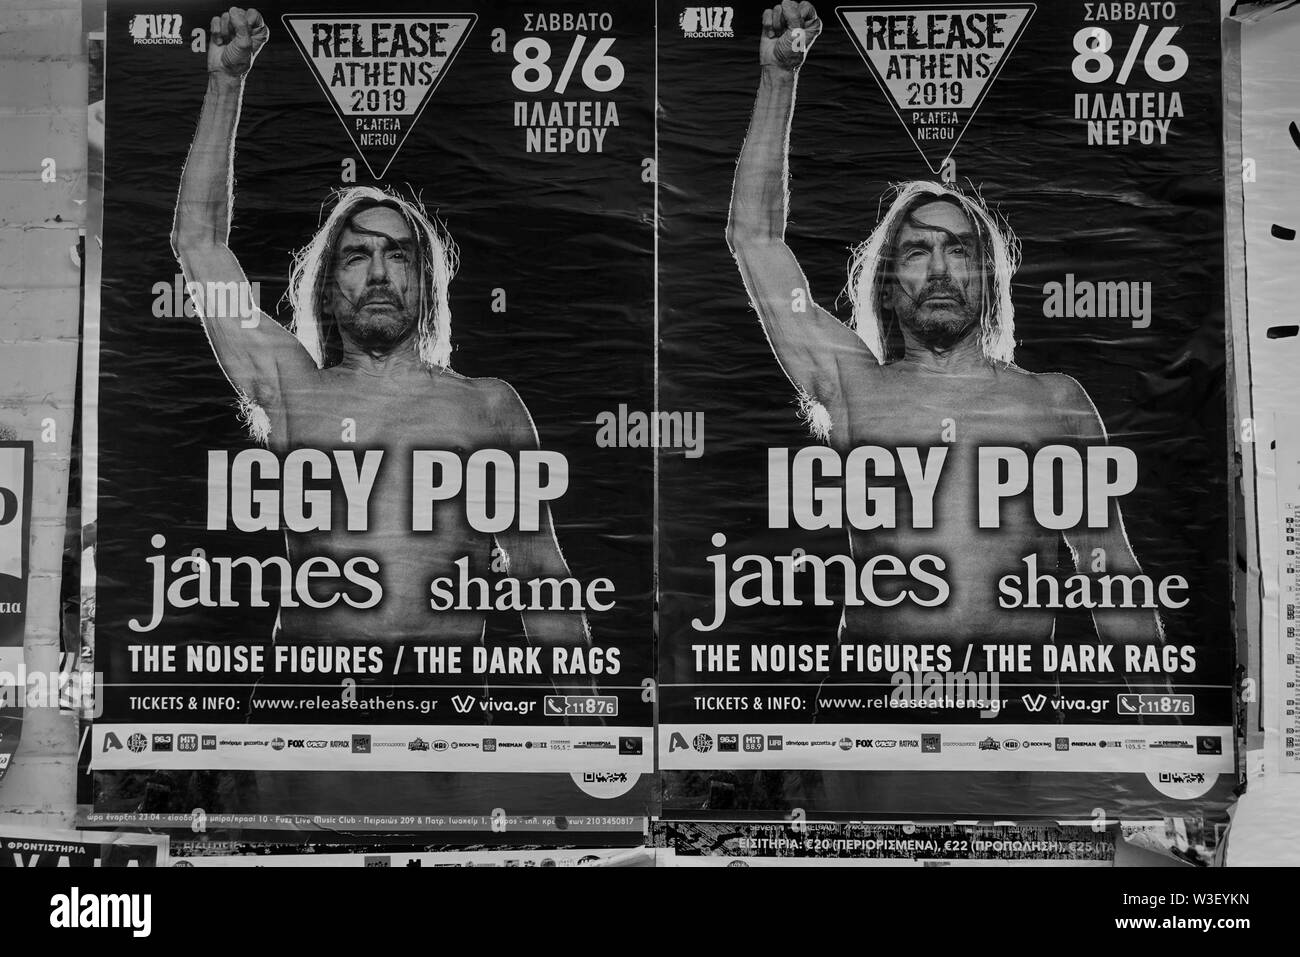 ATHENS, Grecia - 20 Maggio 2019: il muro con Iggy Pop Rock del concerto di musica poster. In bianco e nero. Foto Stock